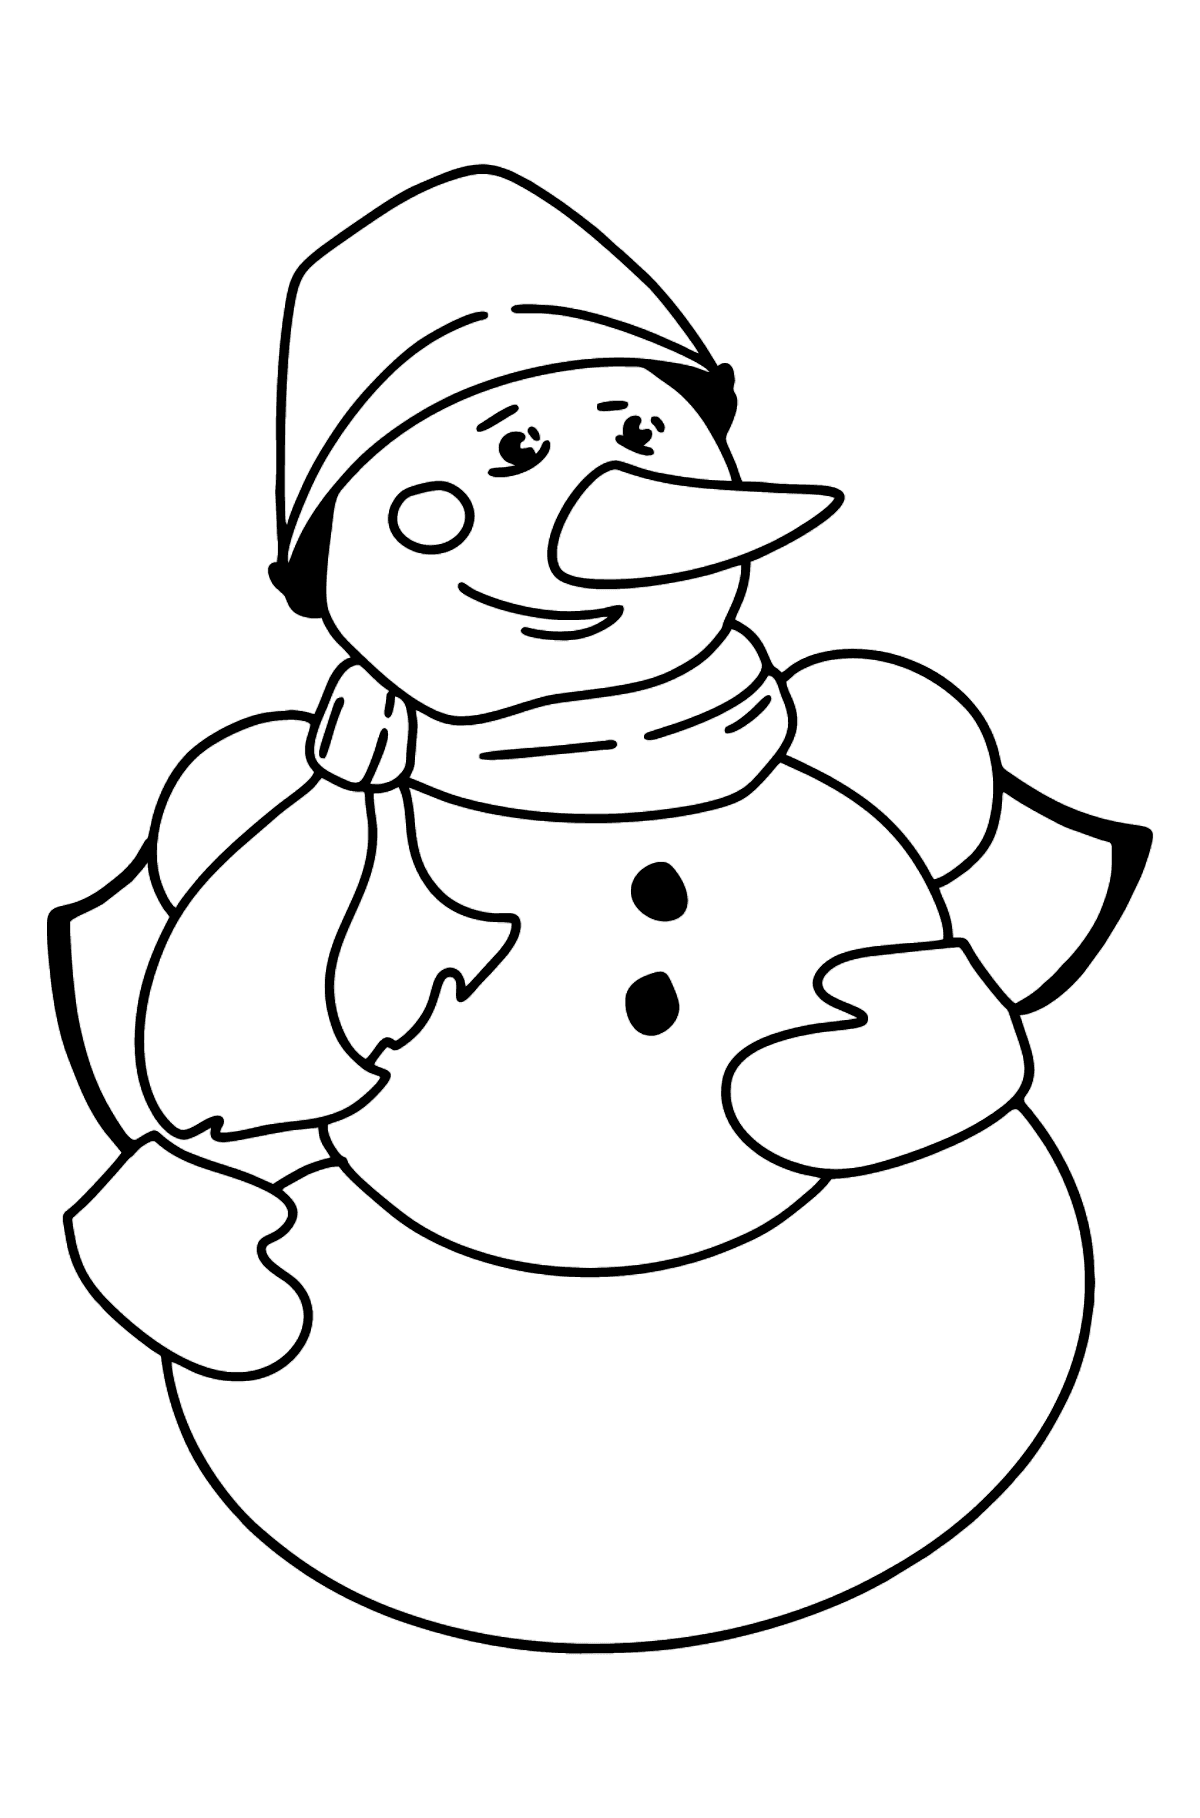 Раскраска снеговик - Картинки для Детей